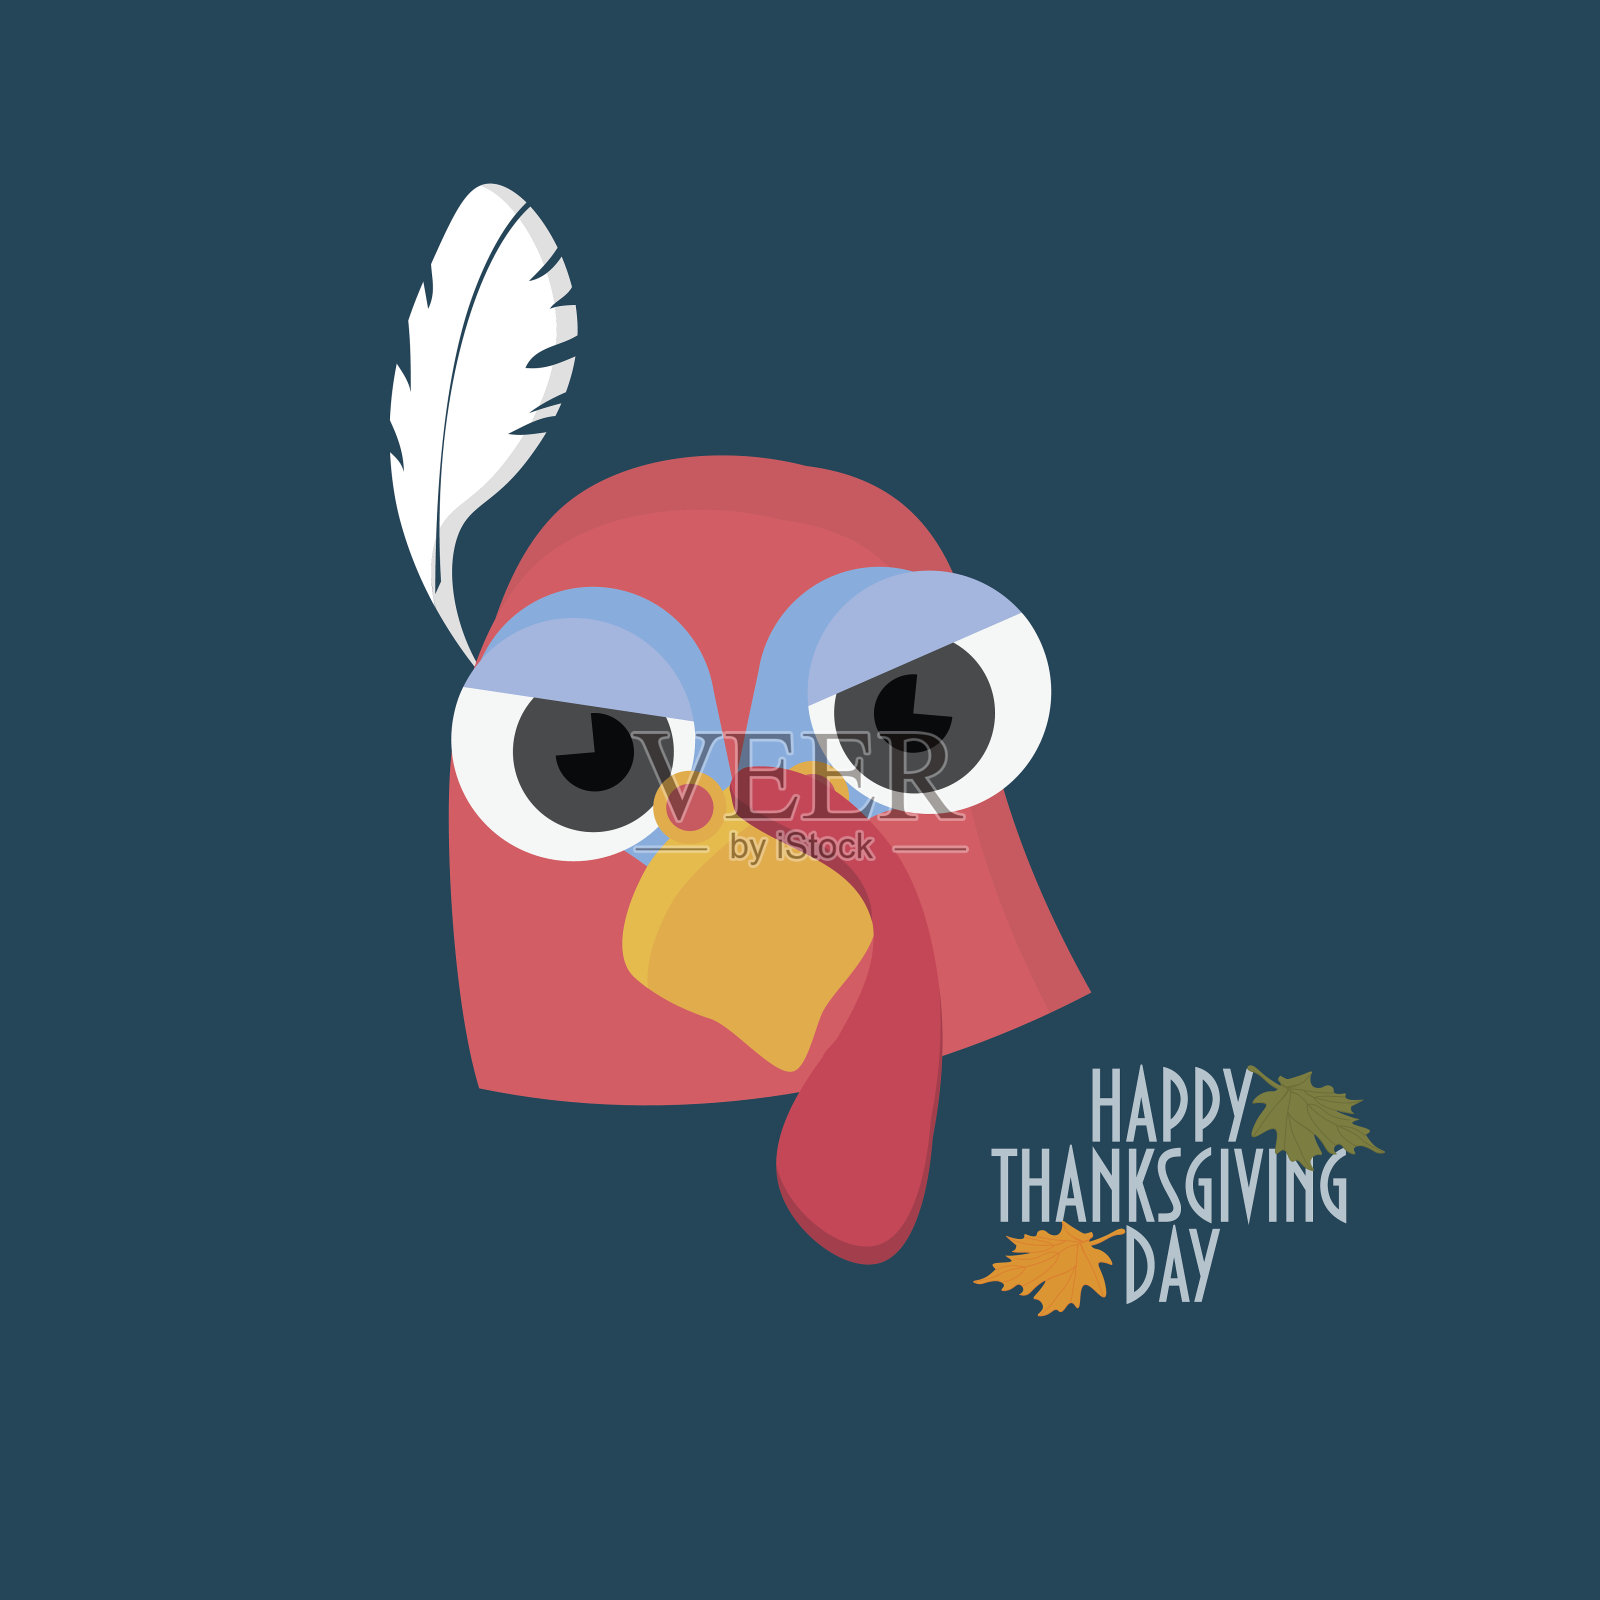 有火鸡鸟脸的感恩节贺卡。插画图片素材